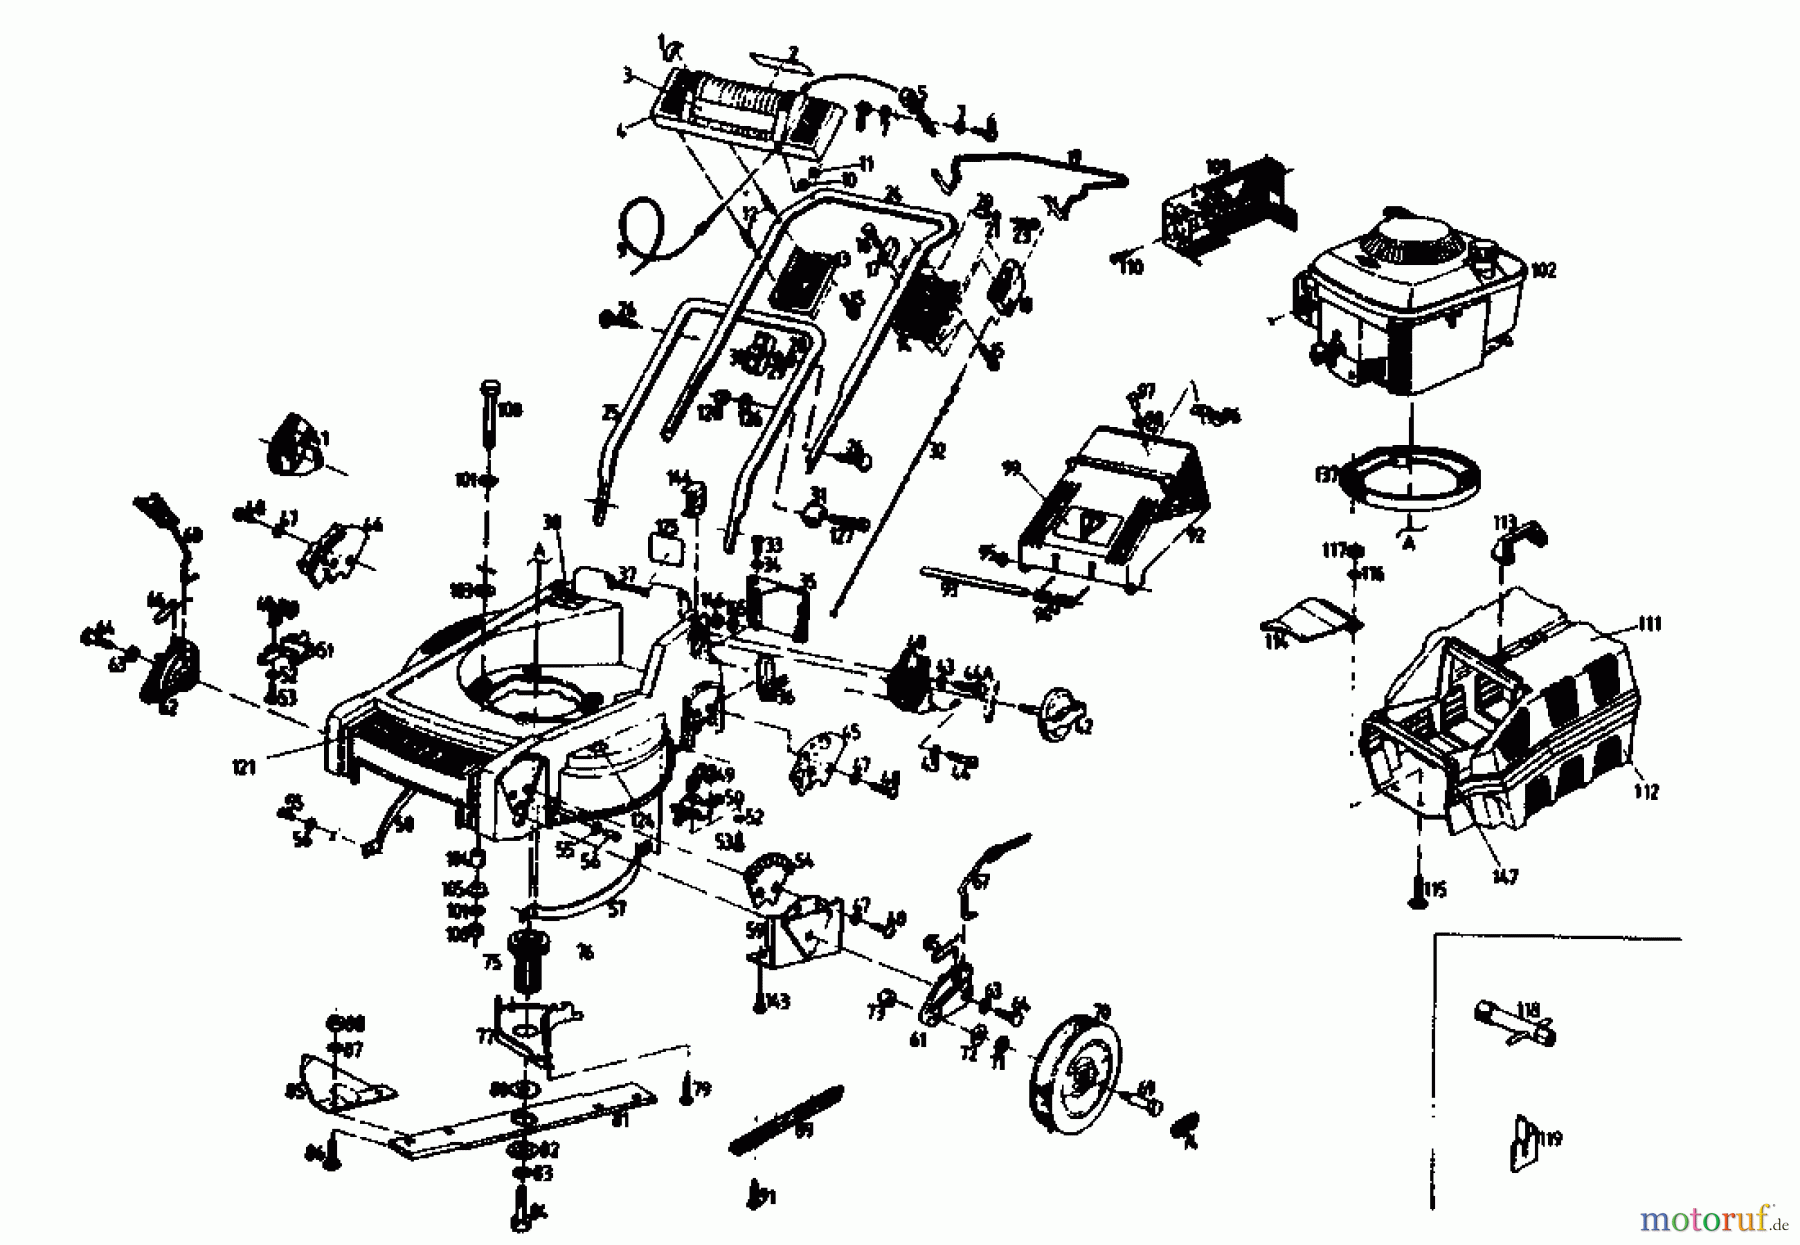  Gutbrod Motormäher mit Antrieb HB 47 R-2 T 02847.05  (1989) Grundgerät